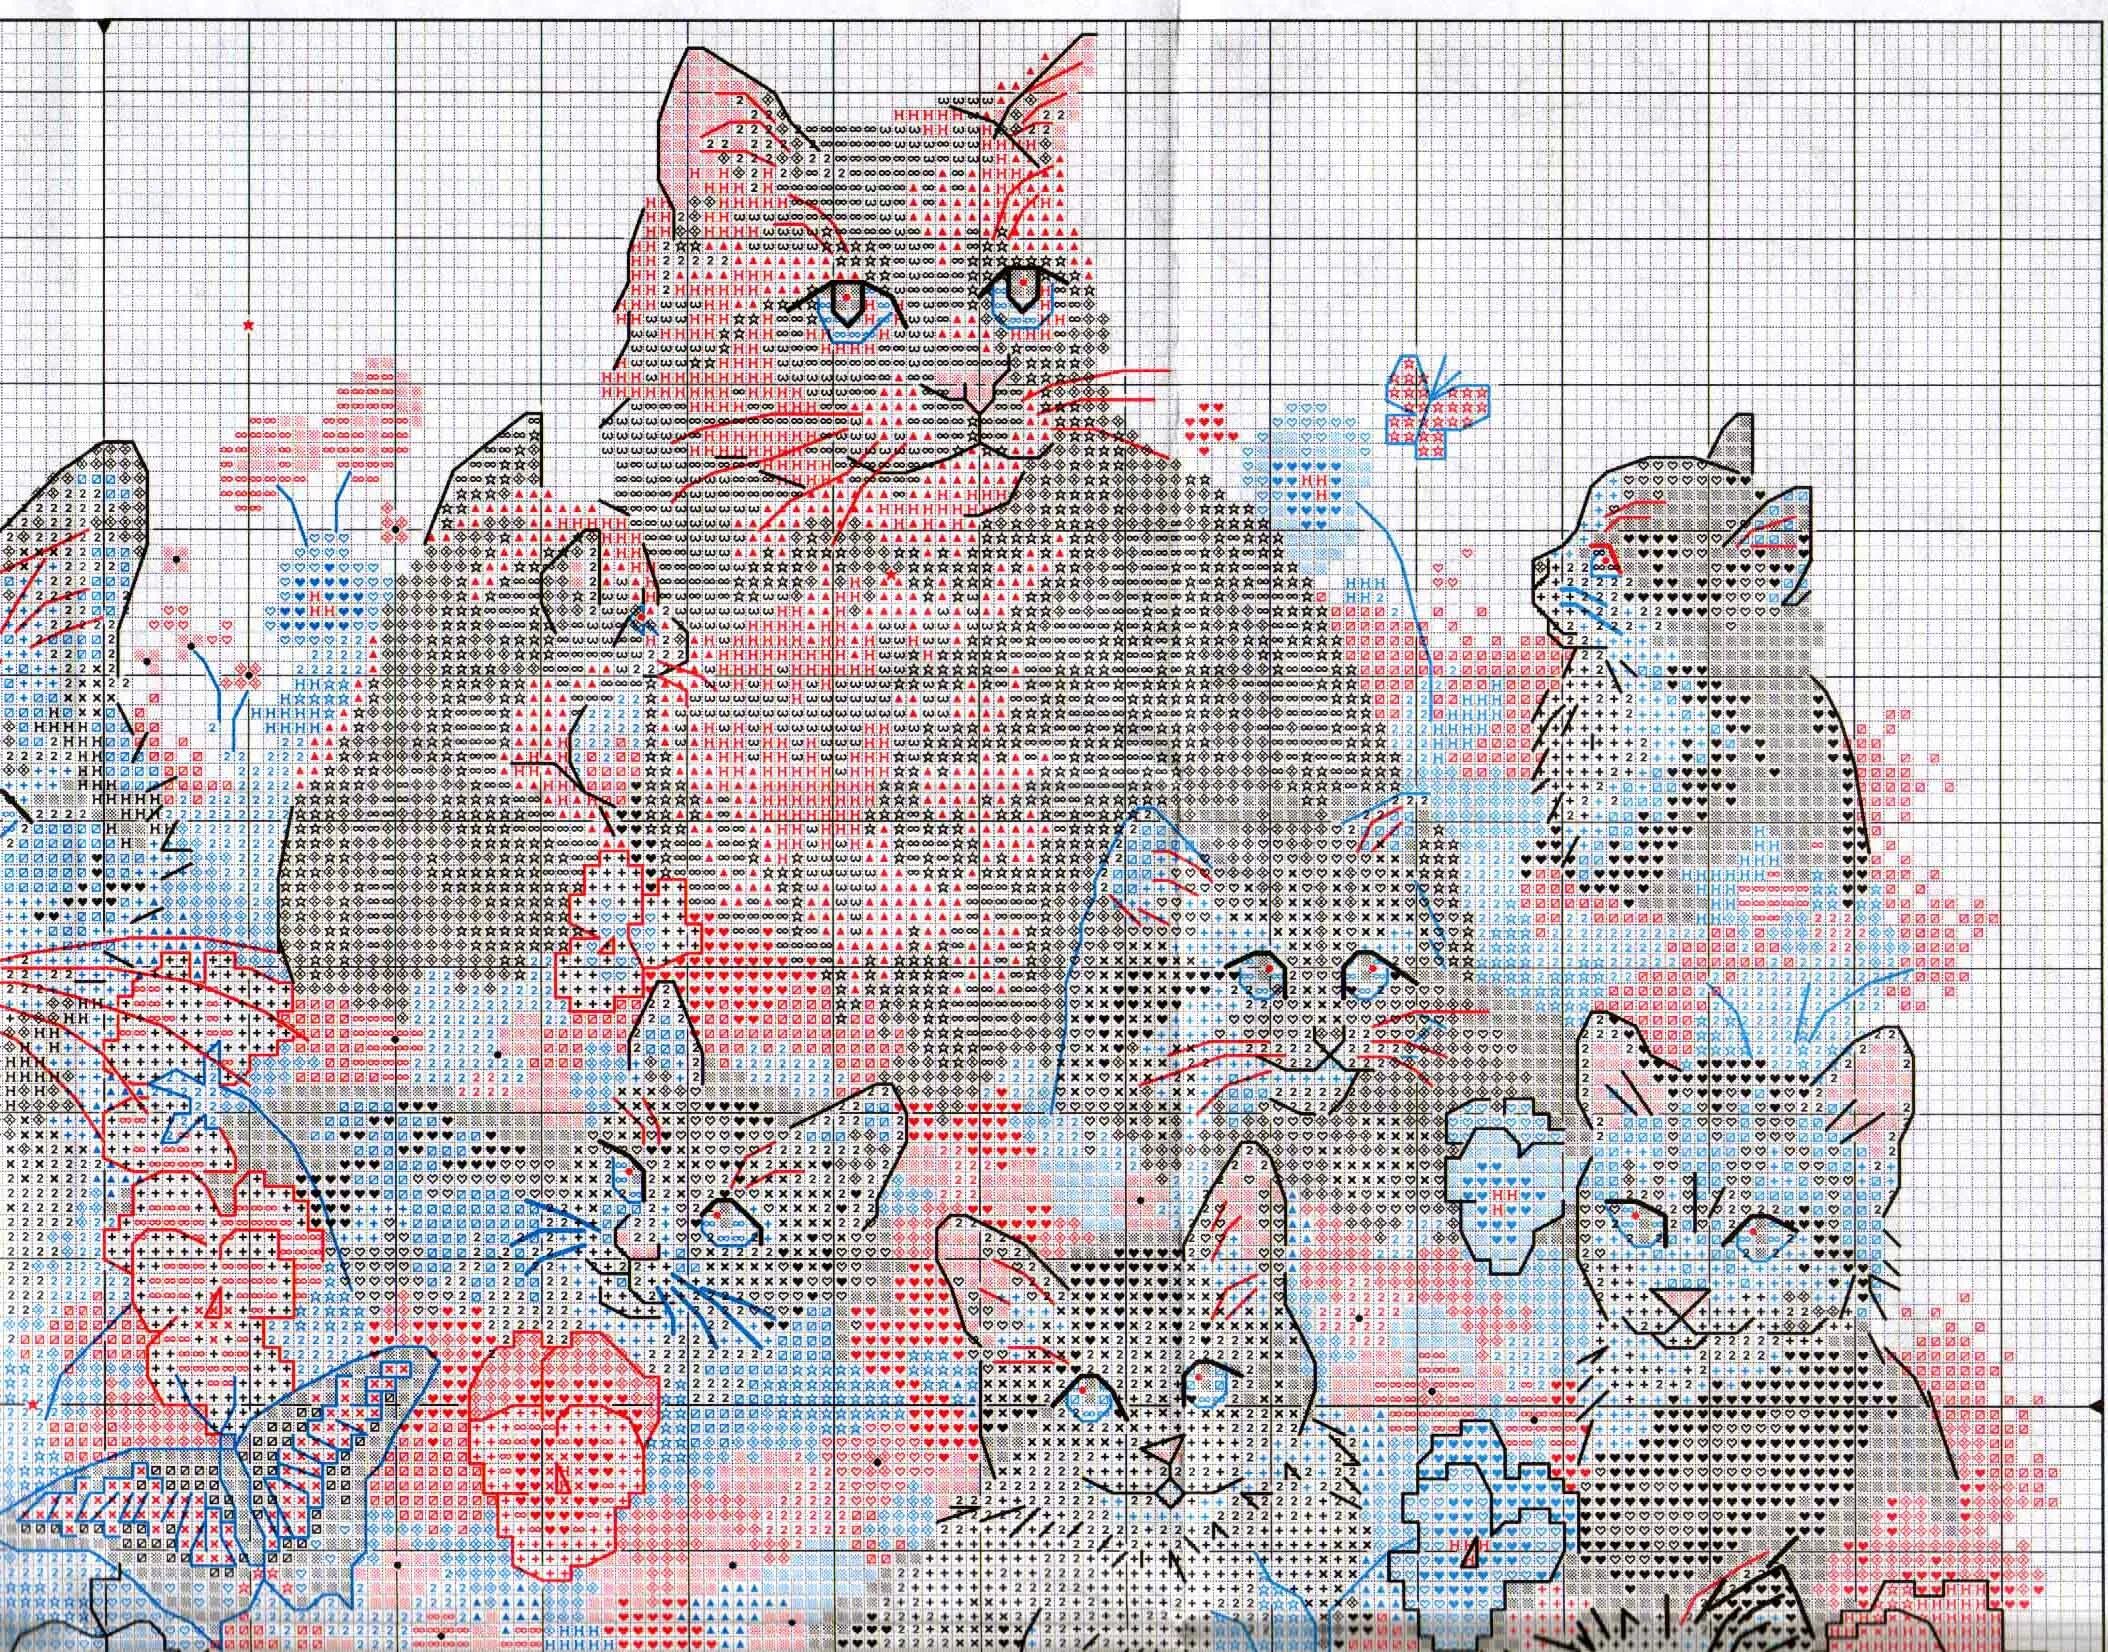 Dimensional chat. Dimensions кот. Кошки вышивка от Дименшенс. Кот вышивка крестом Dimensions. Вышивка кот Dimension.